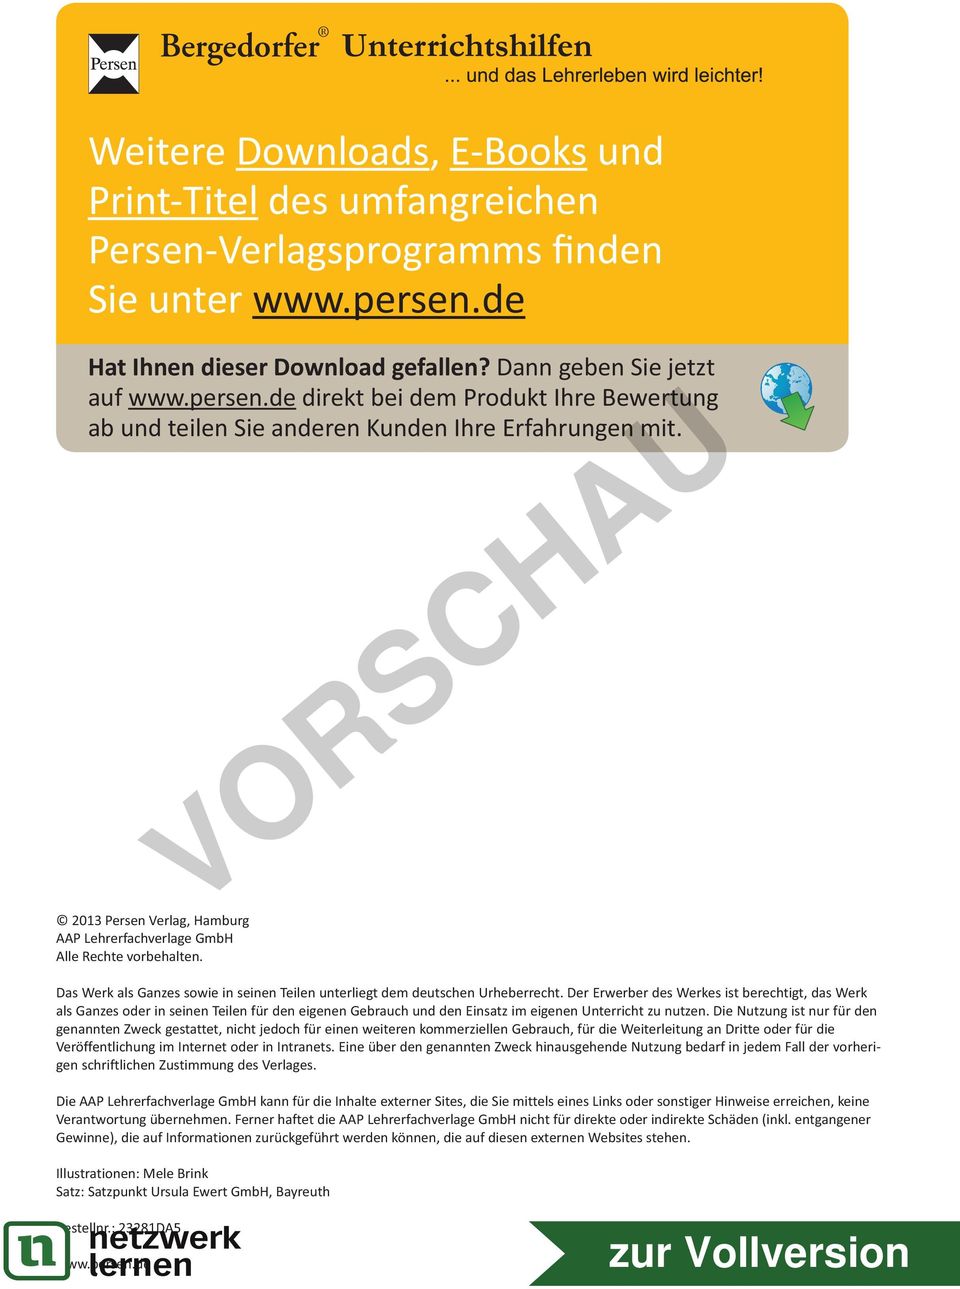 2013 Persen Verlag, Hamburg AAP Lehrerfachverlage GmbH Alle Rechte vorbehalten. Das Werk als Ganzes sowie in seinen Teilen unterliegt dem deutschen Urheberrecht.